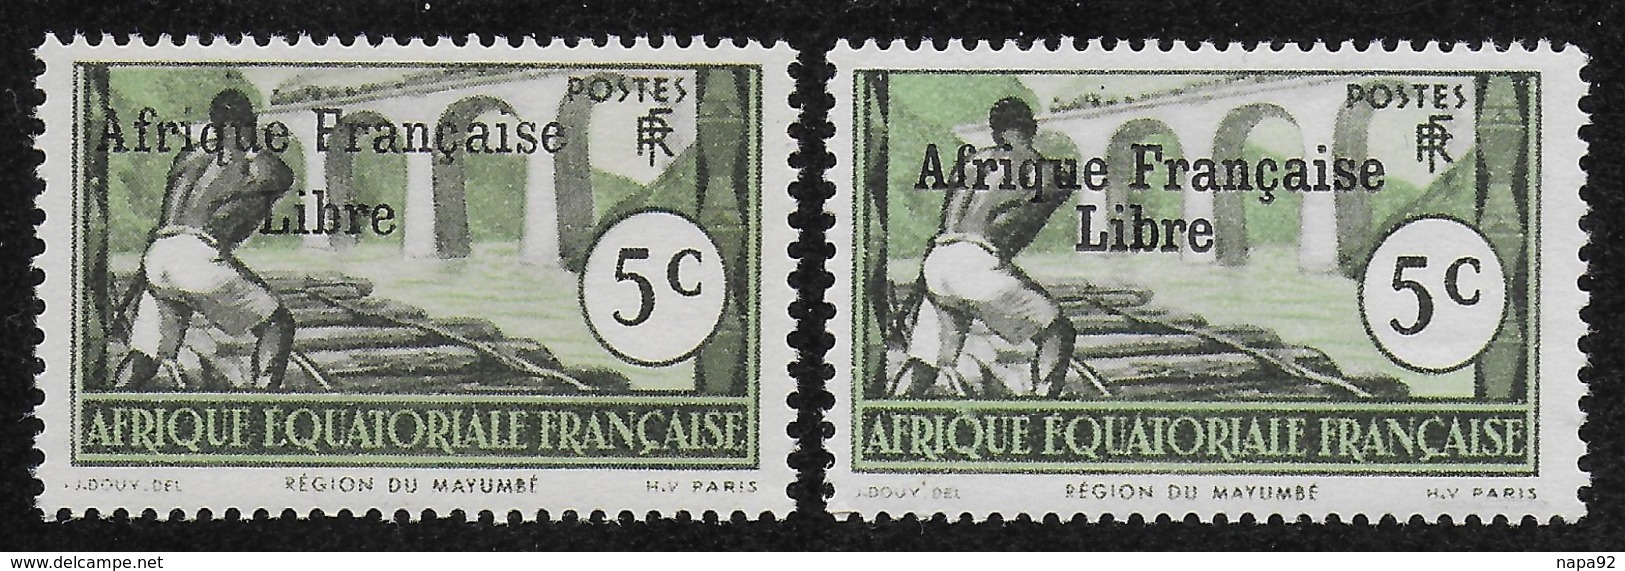 AFRIQUE EQUATORIALE FRANCAISE - AEF - A.E.F. - 1941 - YT 159** AVEC VARIETE - Unused Stamps